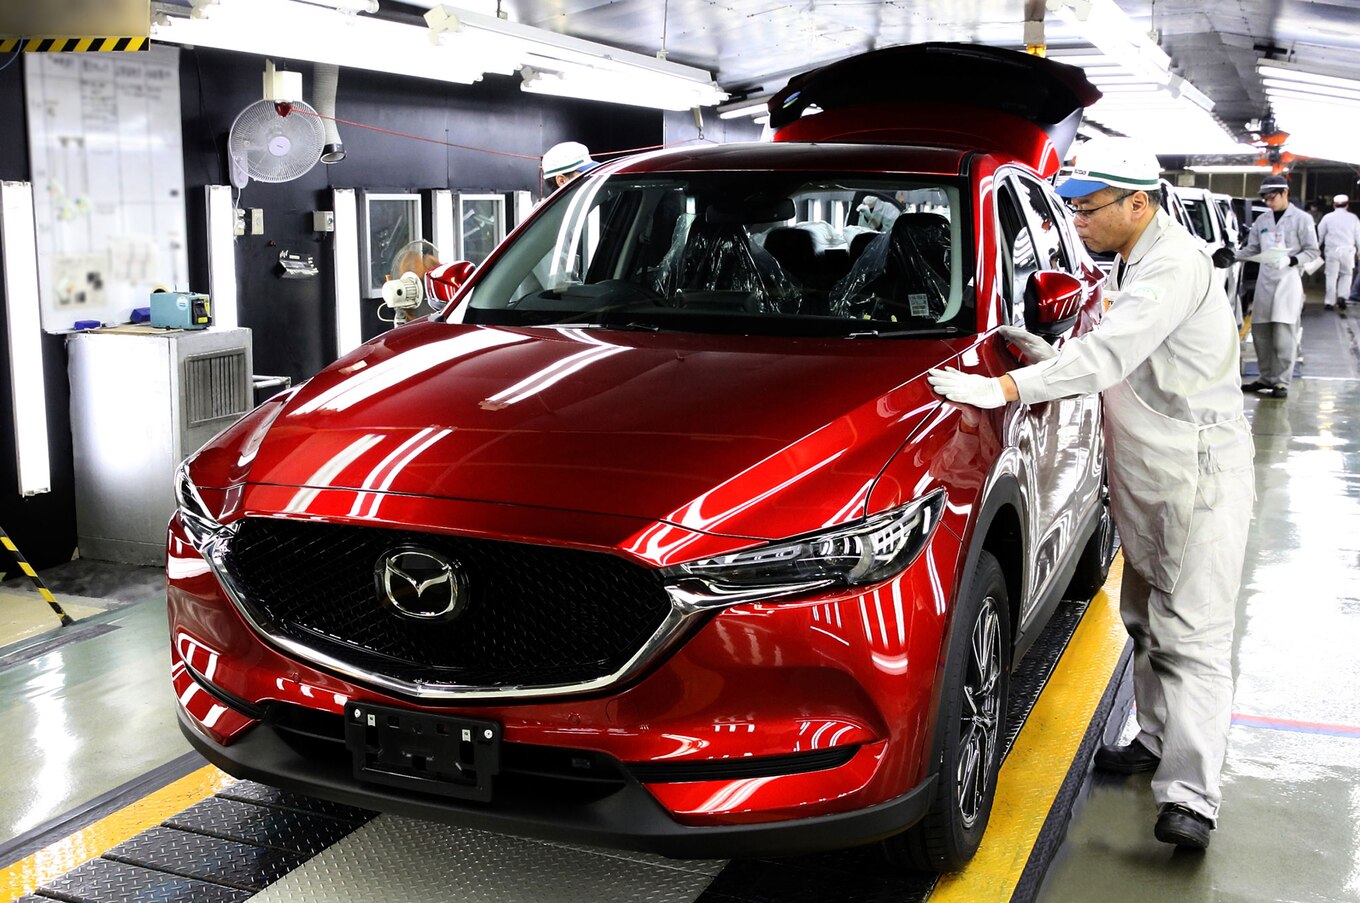 2017 Mazda CX 5 on assembly line